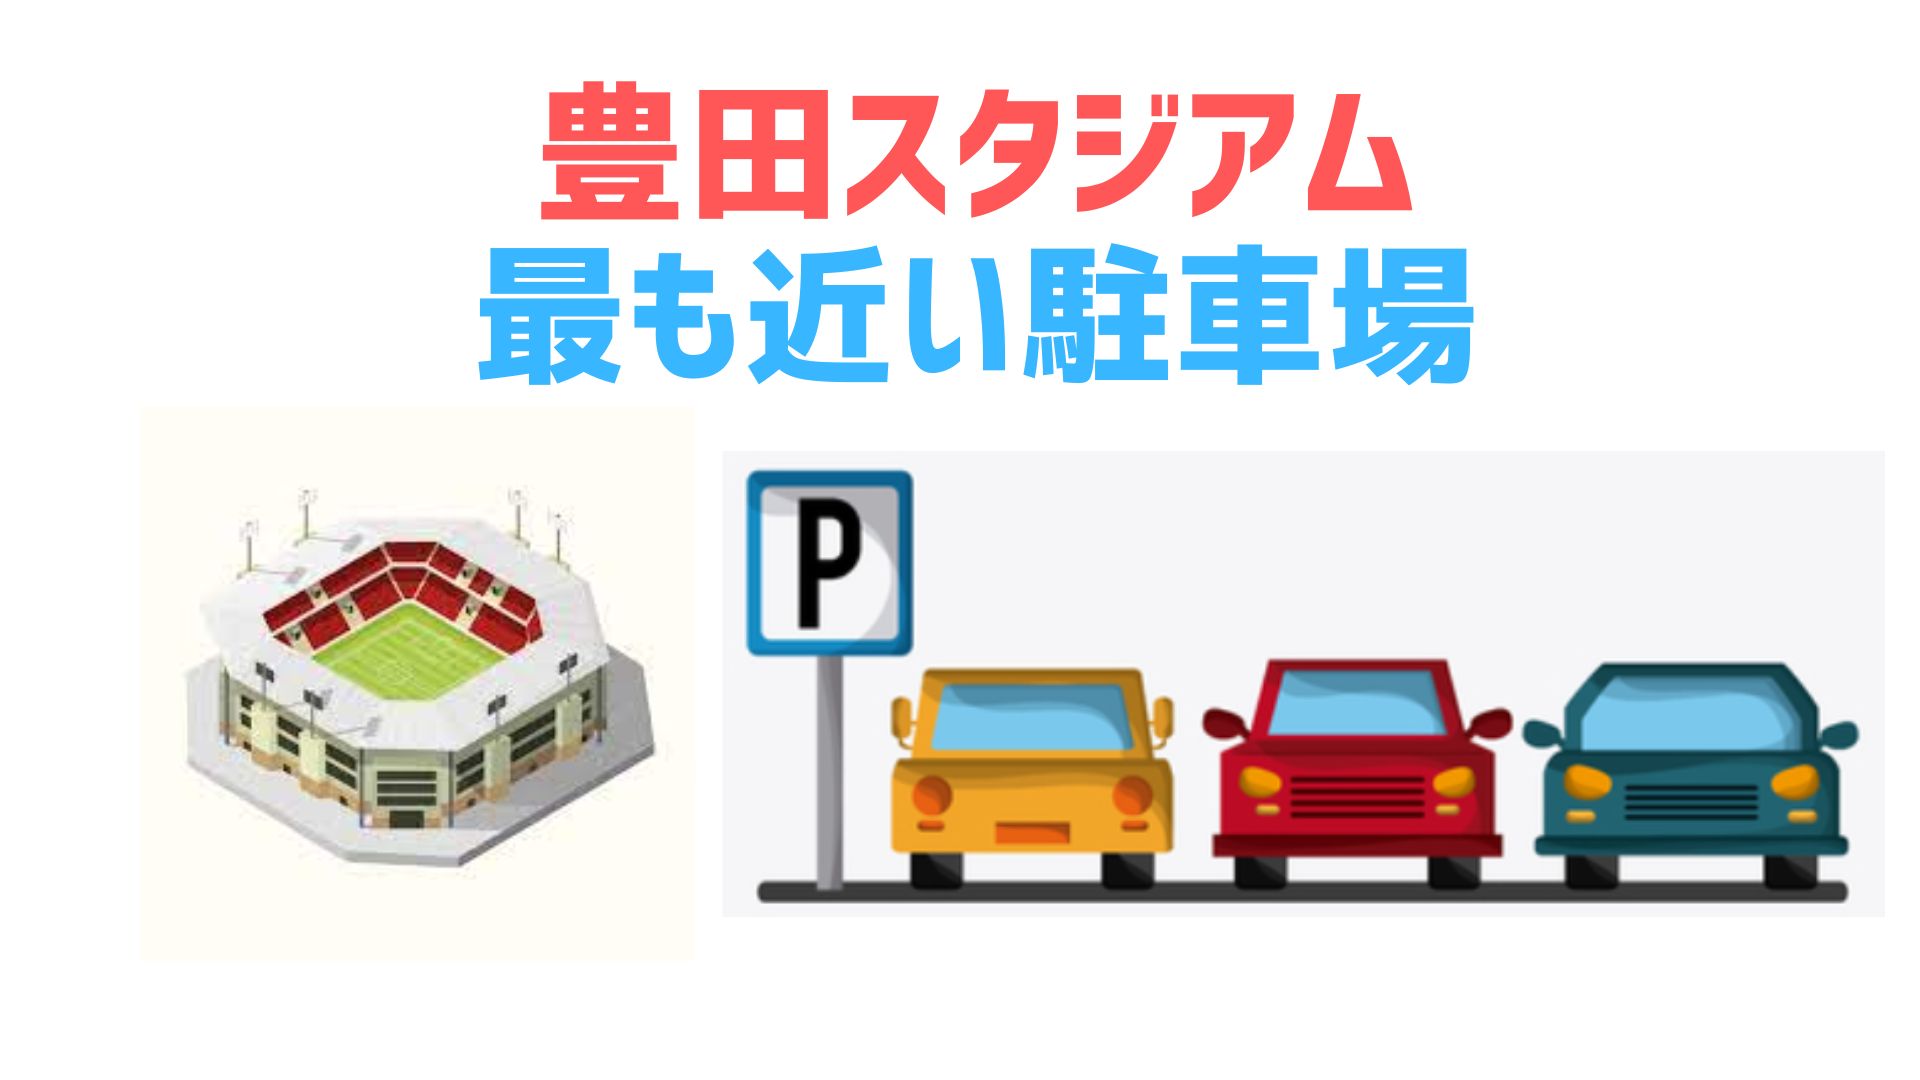 豊田スタジアムに最も近い駐車場